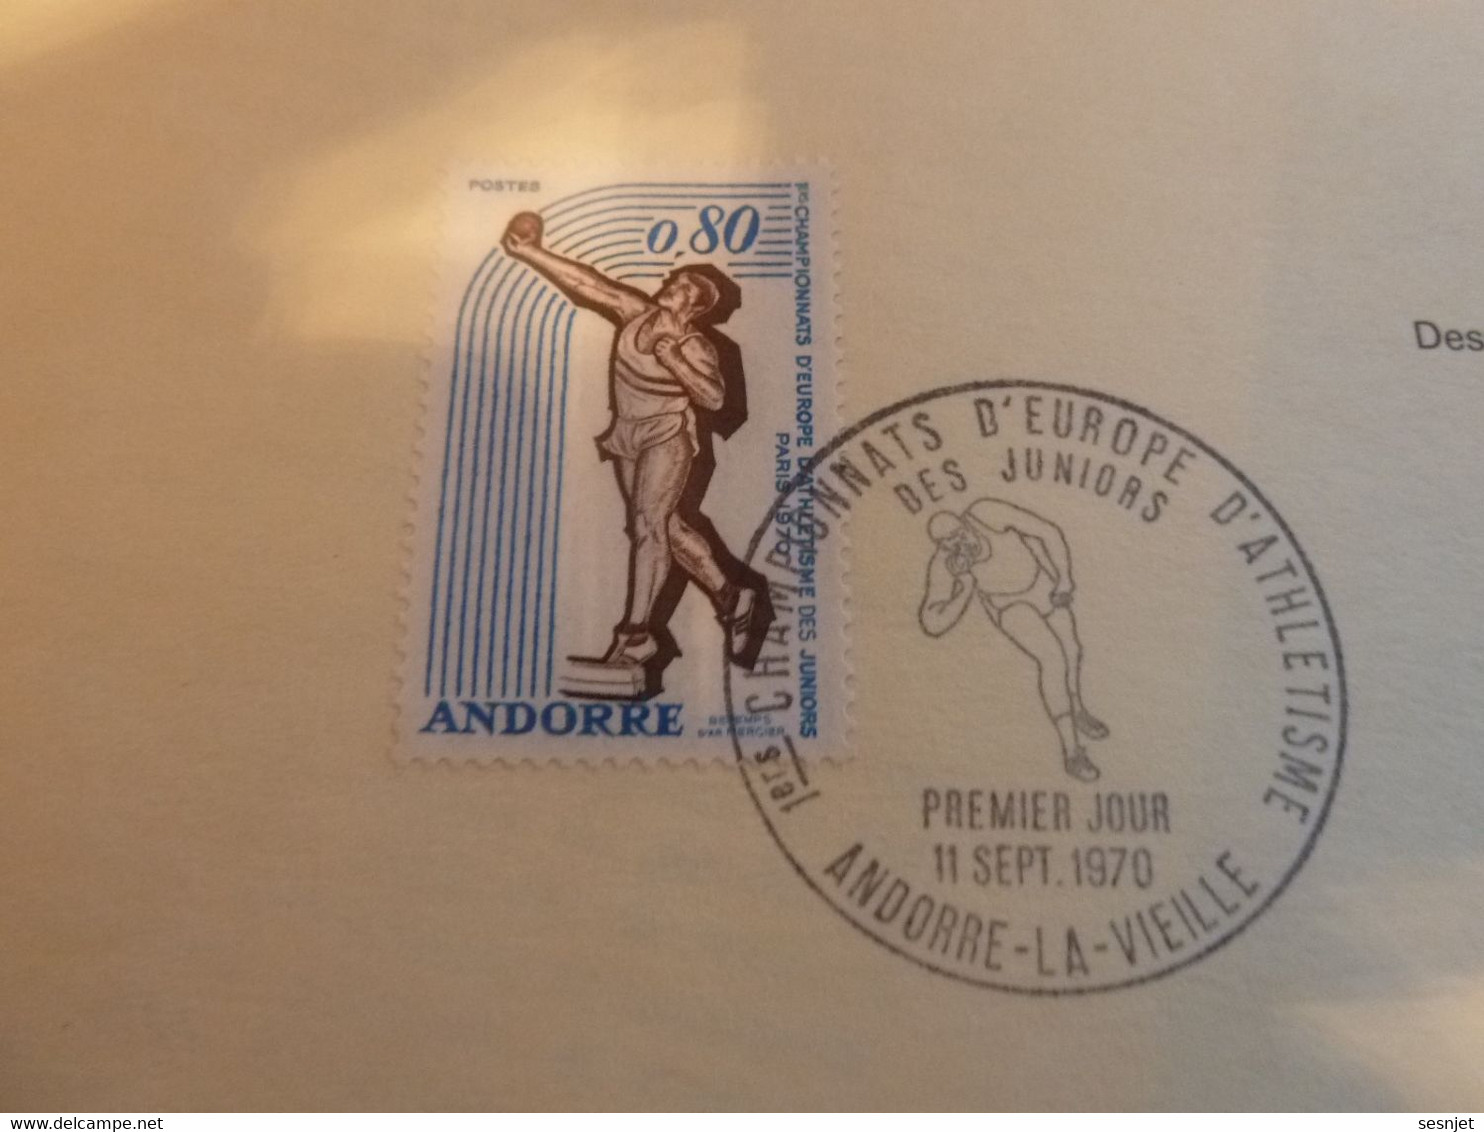 Andorre-la-Vieille - Premiers Championnats D'Europe D'Athlétisme Des Juniors - 1970 - - Used Stamps